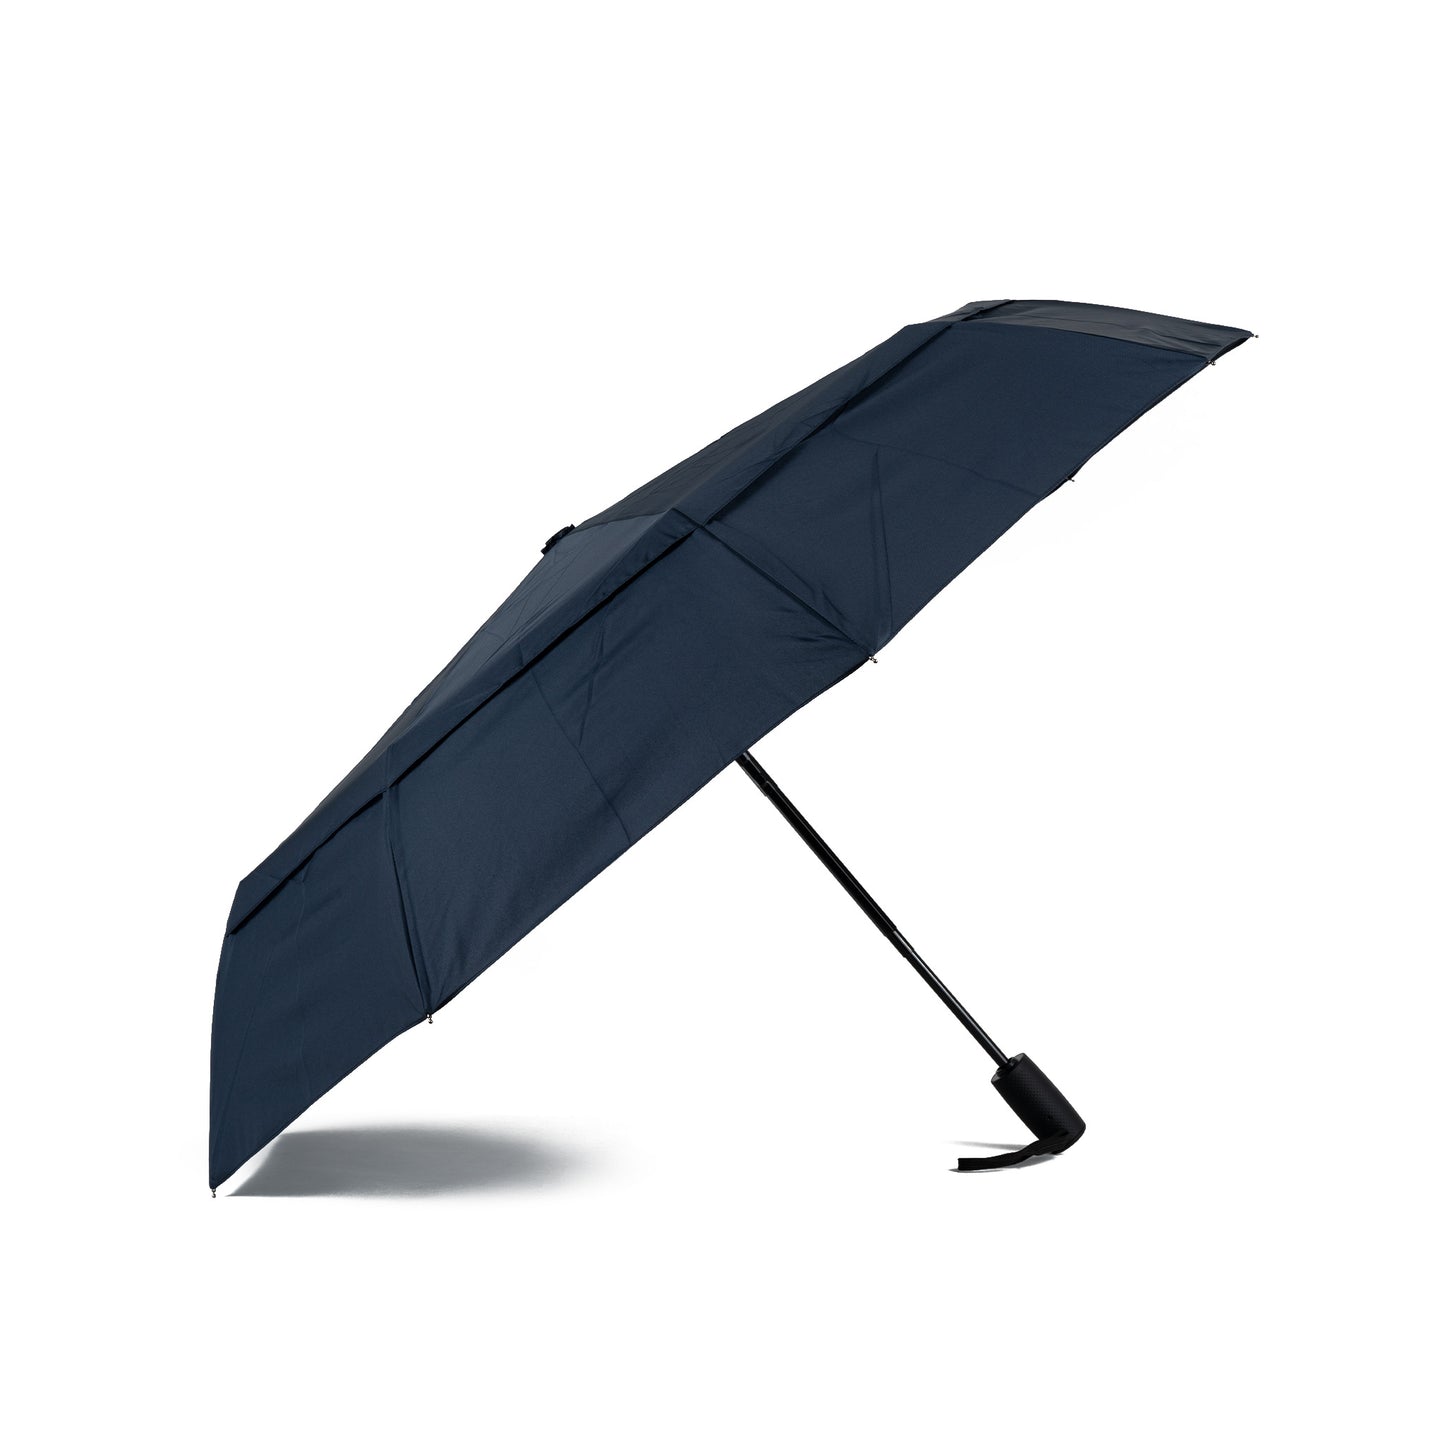 Roka London Waterloo Sustainable Umbrella, Midnight